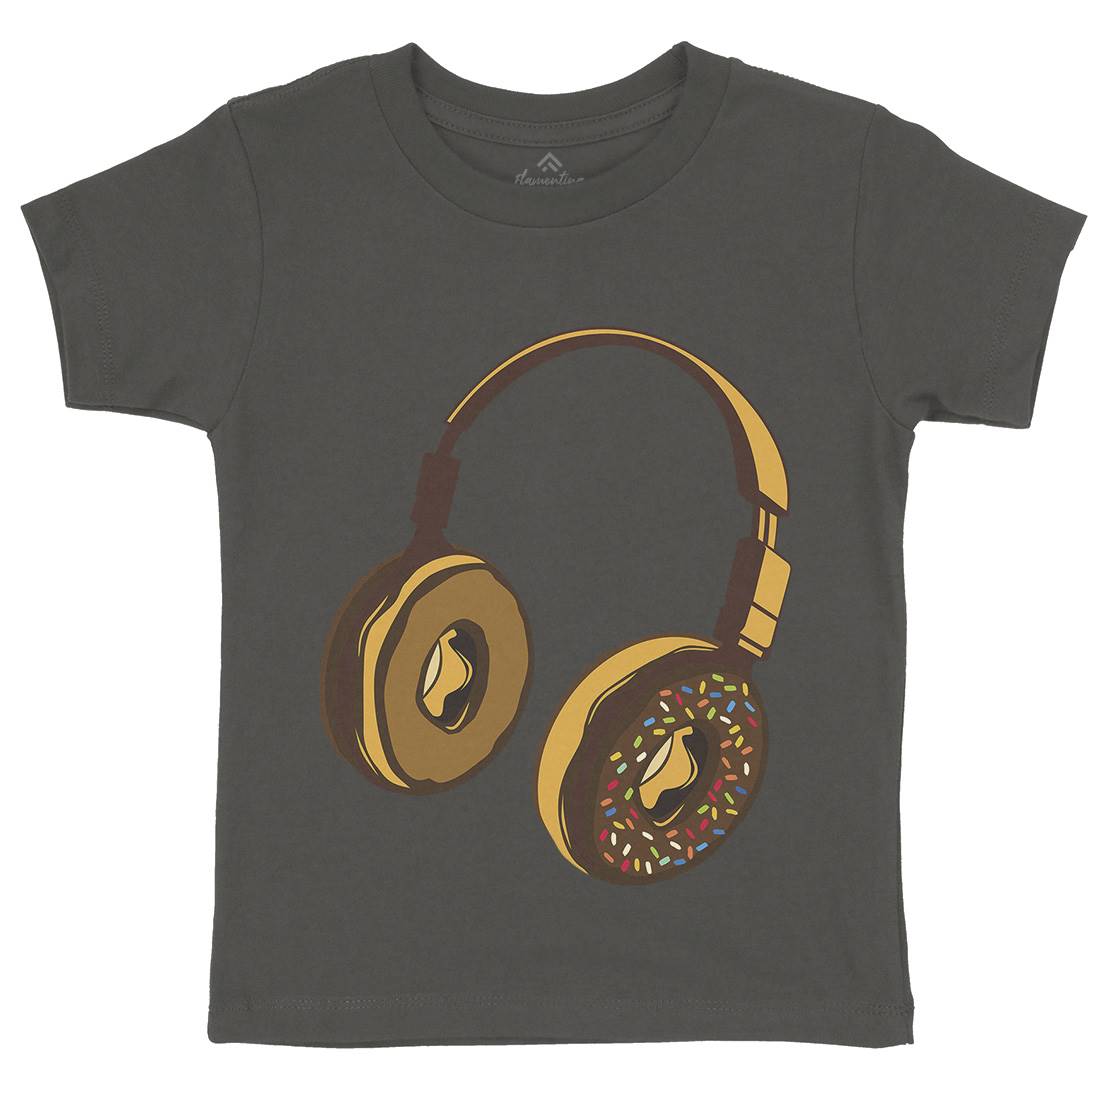 Headphone Donut Kids Crew Neck T-Shirt Music B050